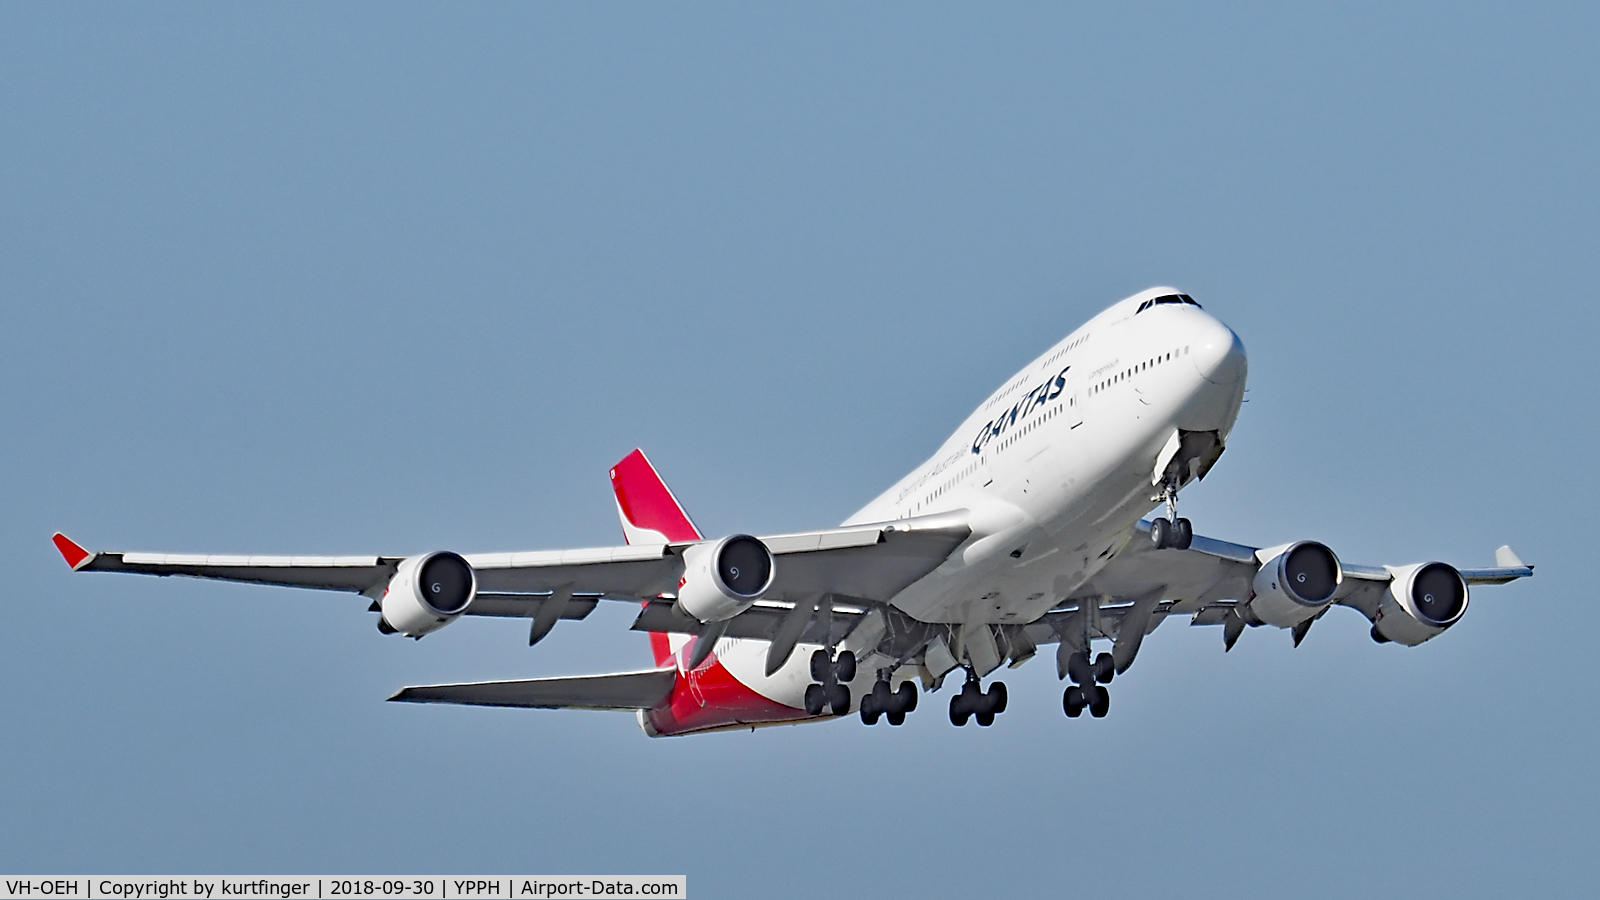 VH-OEH, 2003 Boeing 747-438/ER C/N 32912, Boeing 747-438(ER) Qantas VH-OEH, departed runway 21 YPPH 30/09/18.